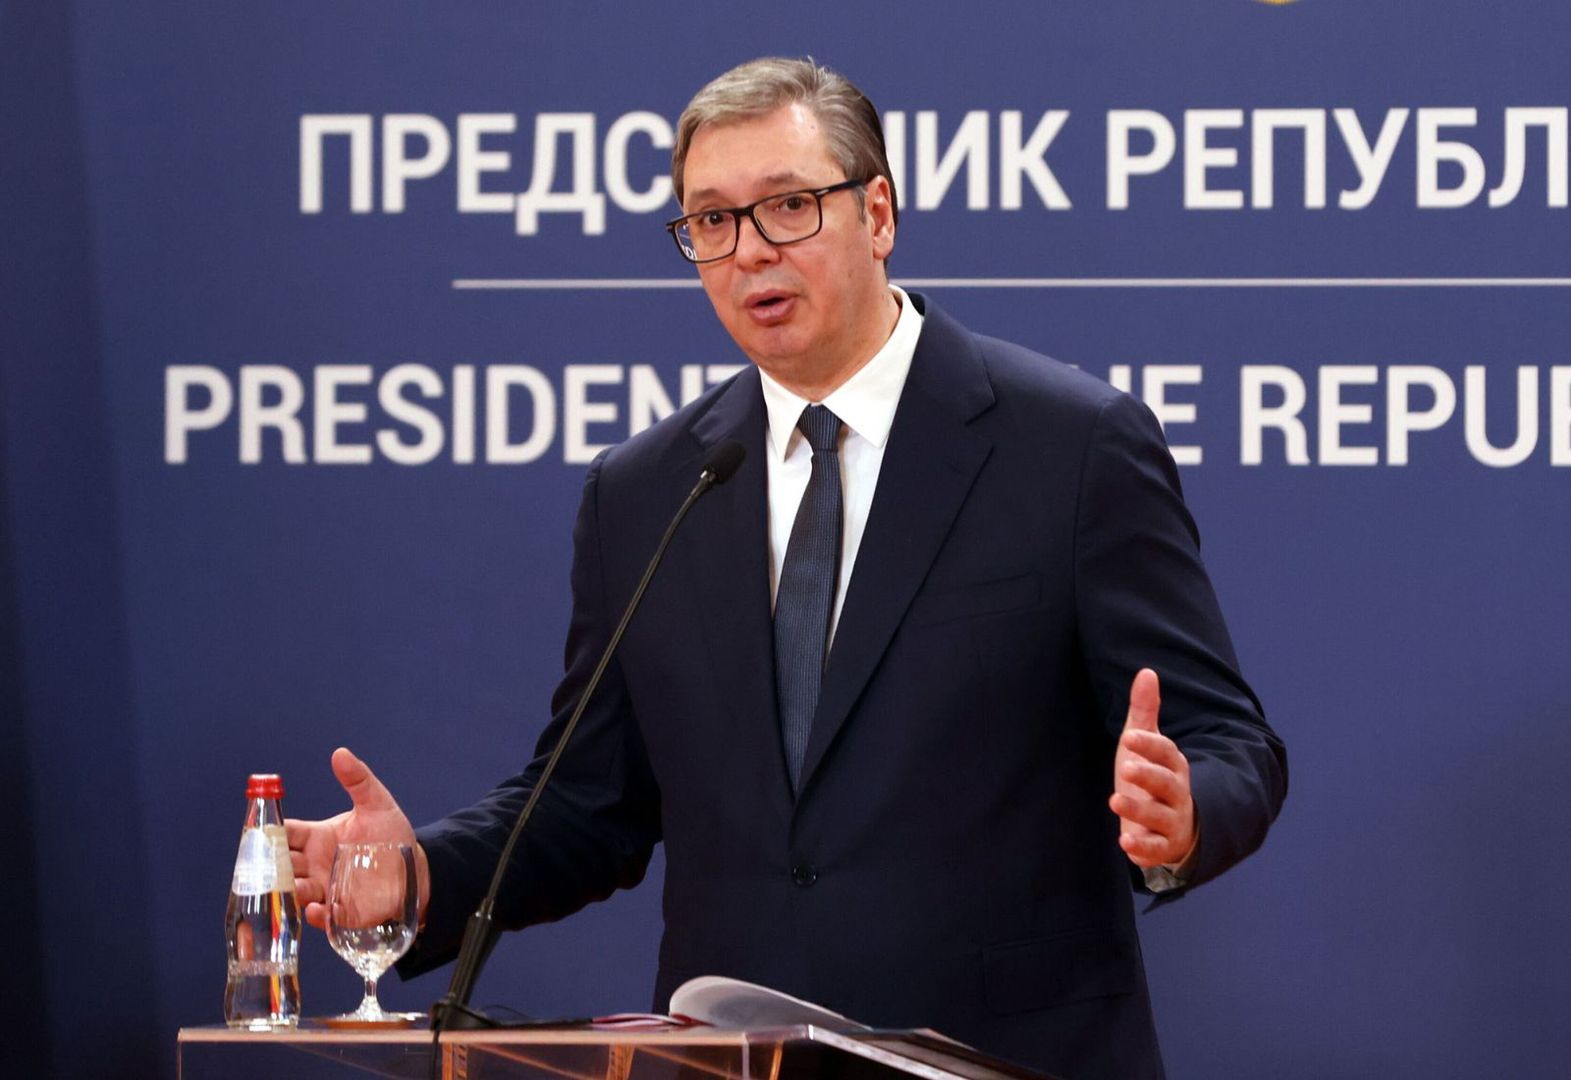 Prezydent Serbii mówi o III wojnie światowej. "Mamy dwa scenariusze"